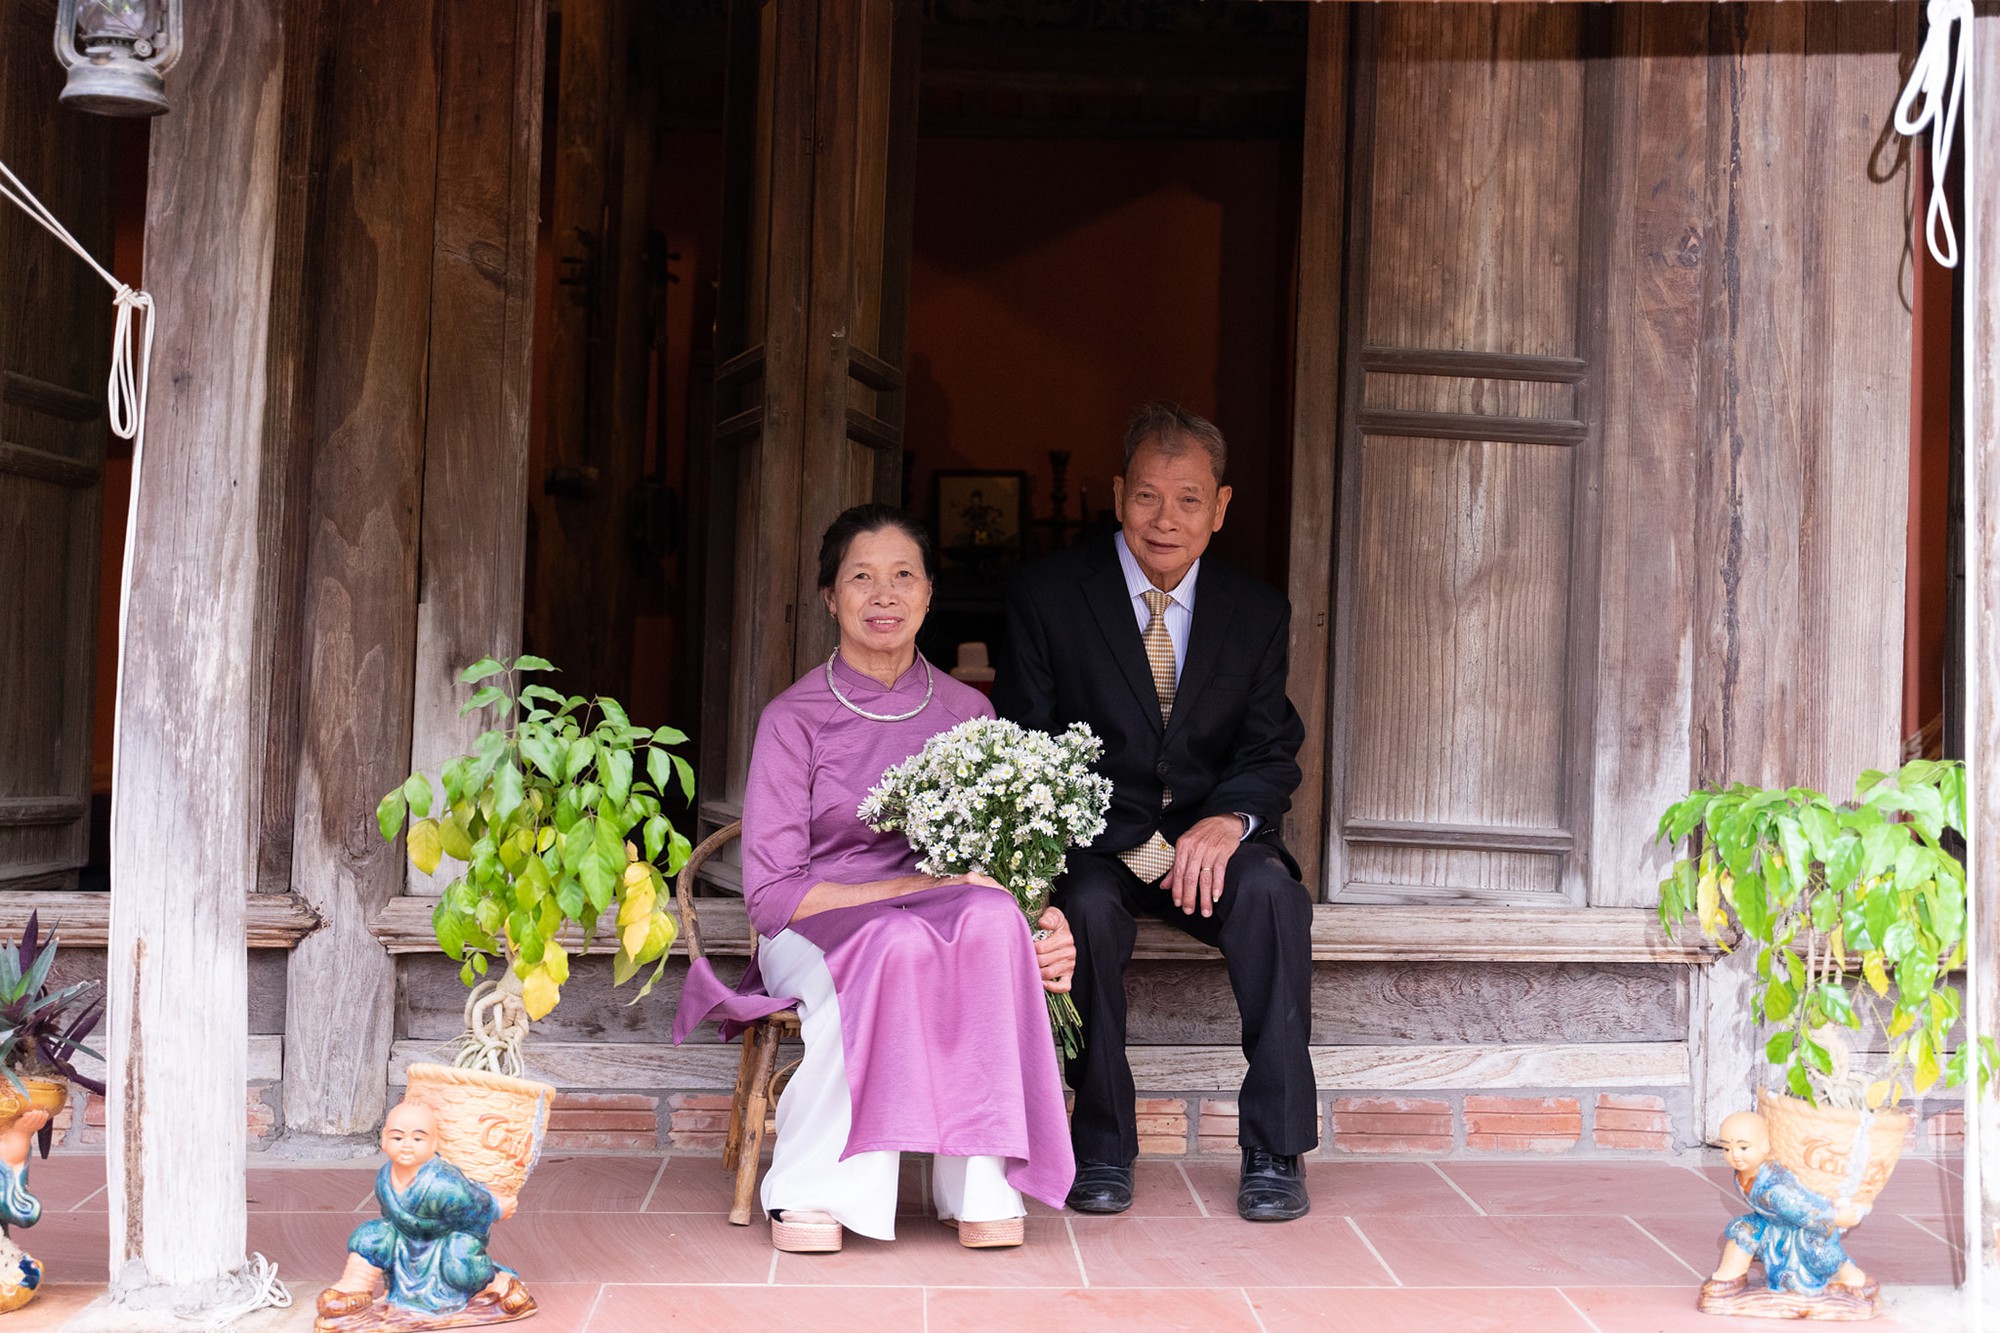 Đám cưới bí mật mang tên “45 năm chung 1 chiến hào”: Câu chuyện tình yêu chạm đến trái tim về những ngày của mẹ  - Ảnh 6.